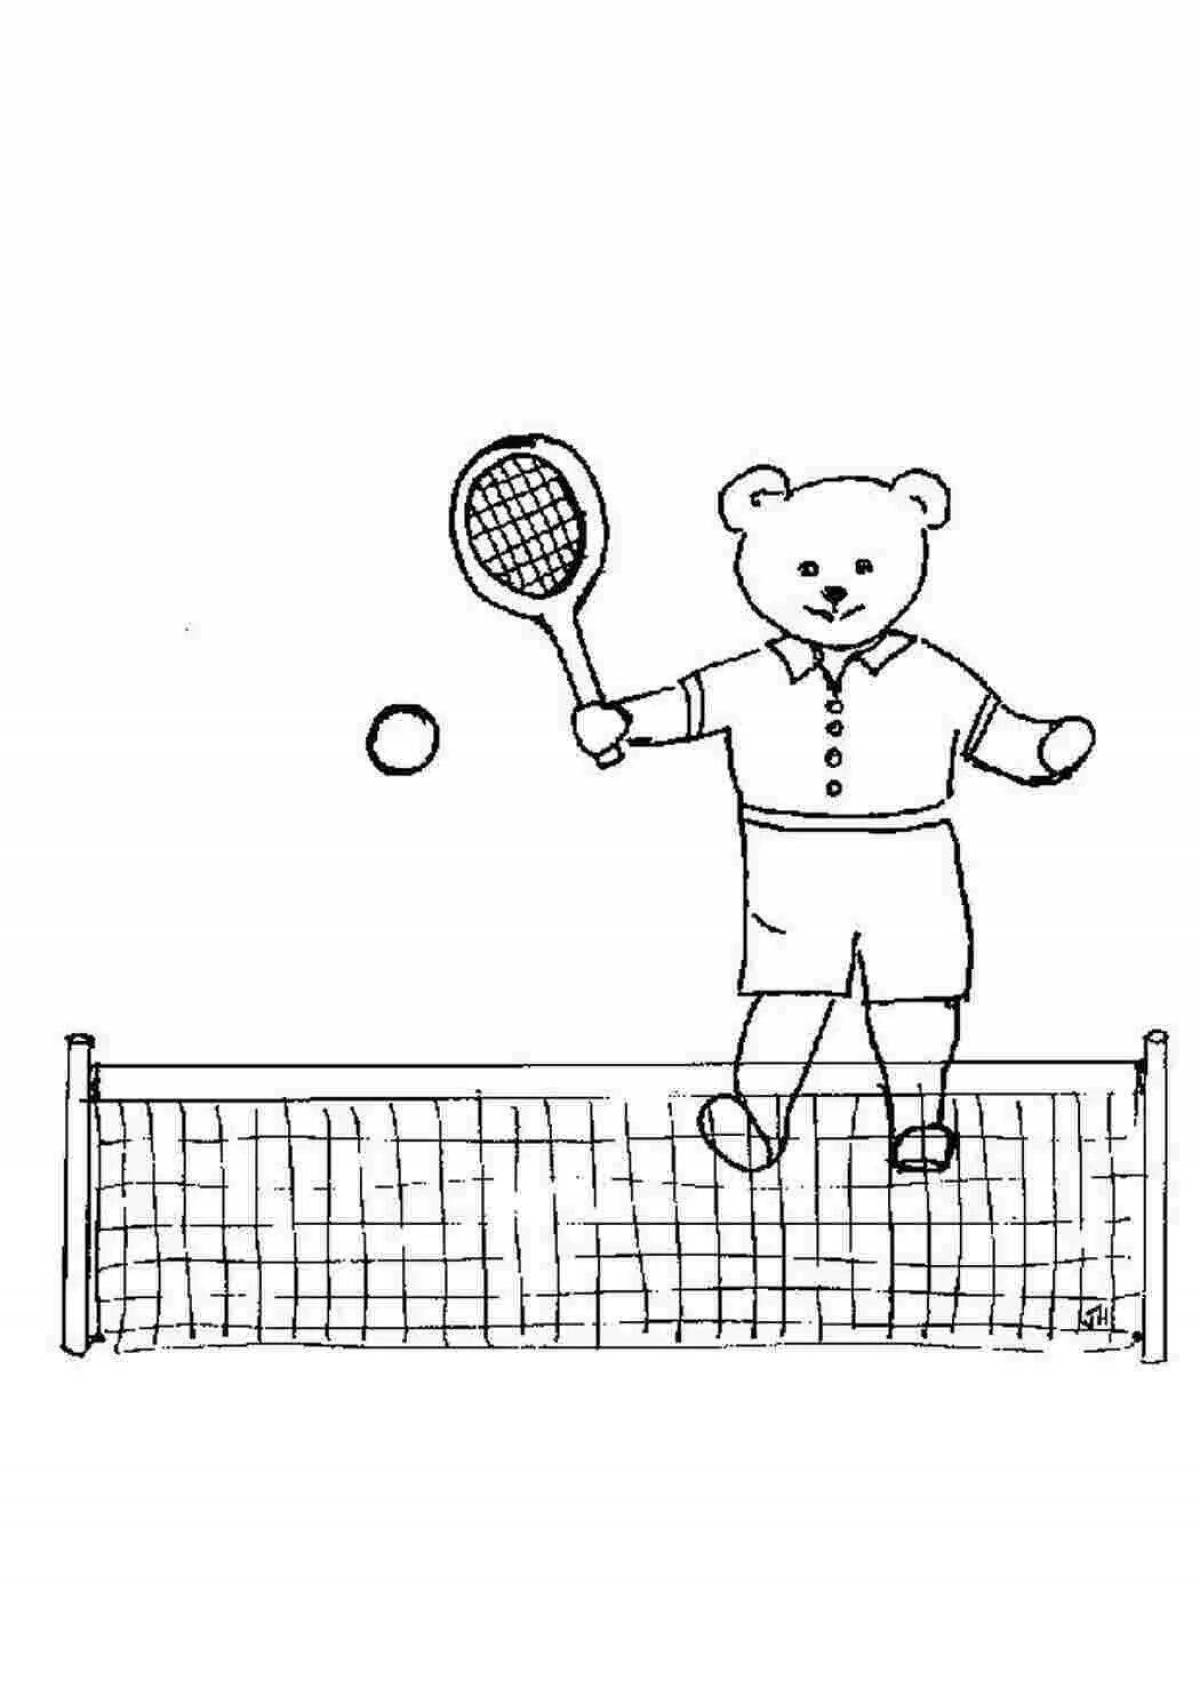 Fun tennis coloring book for kids